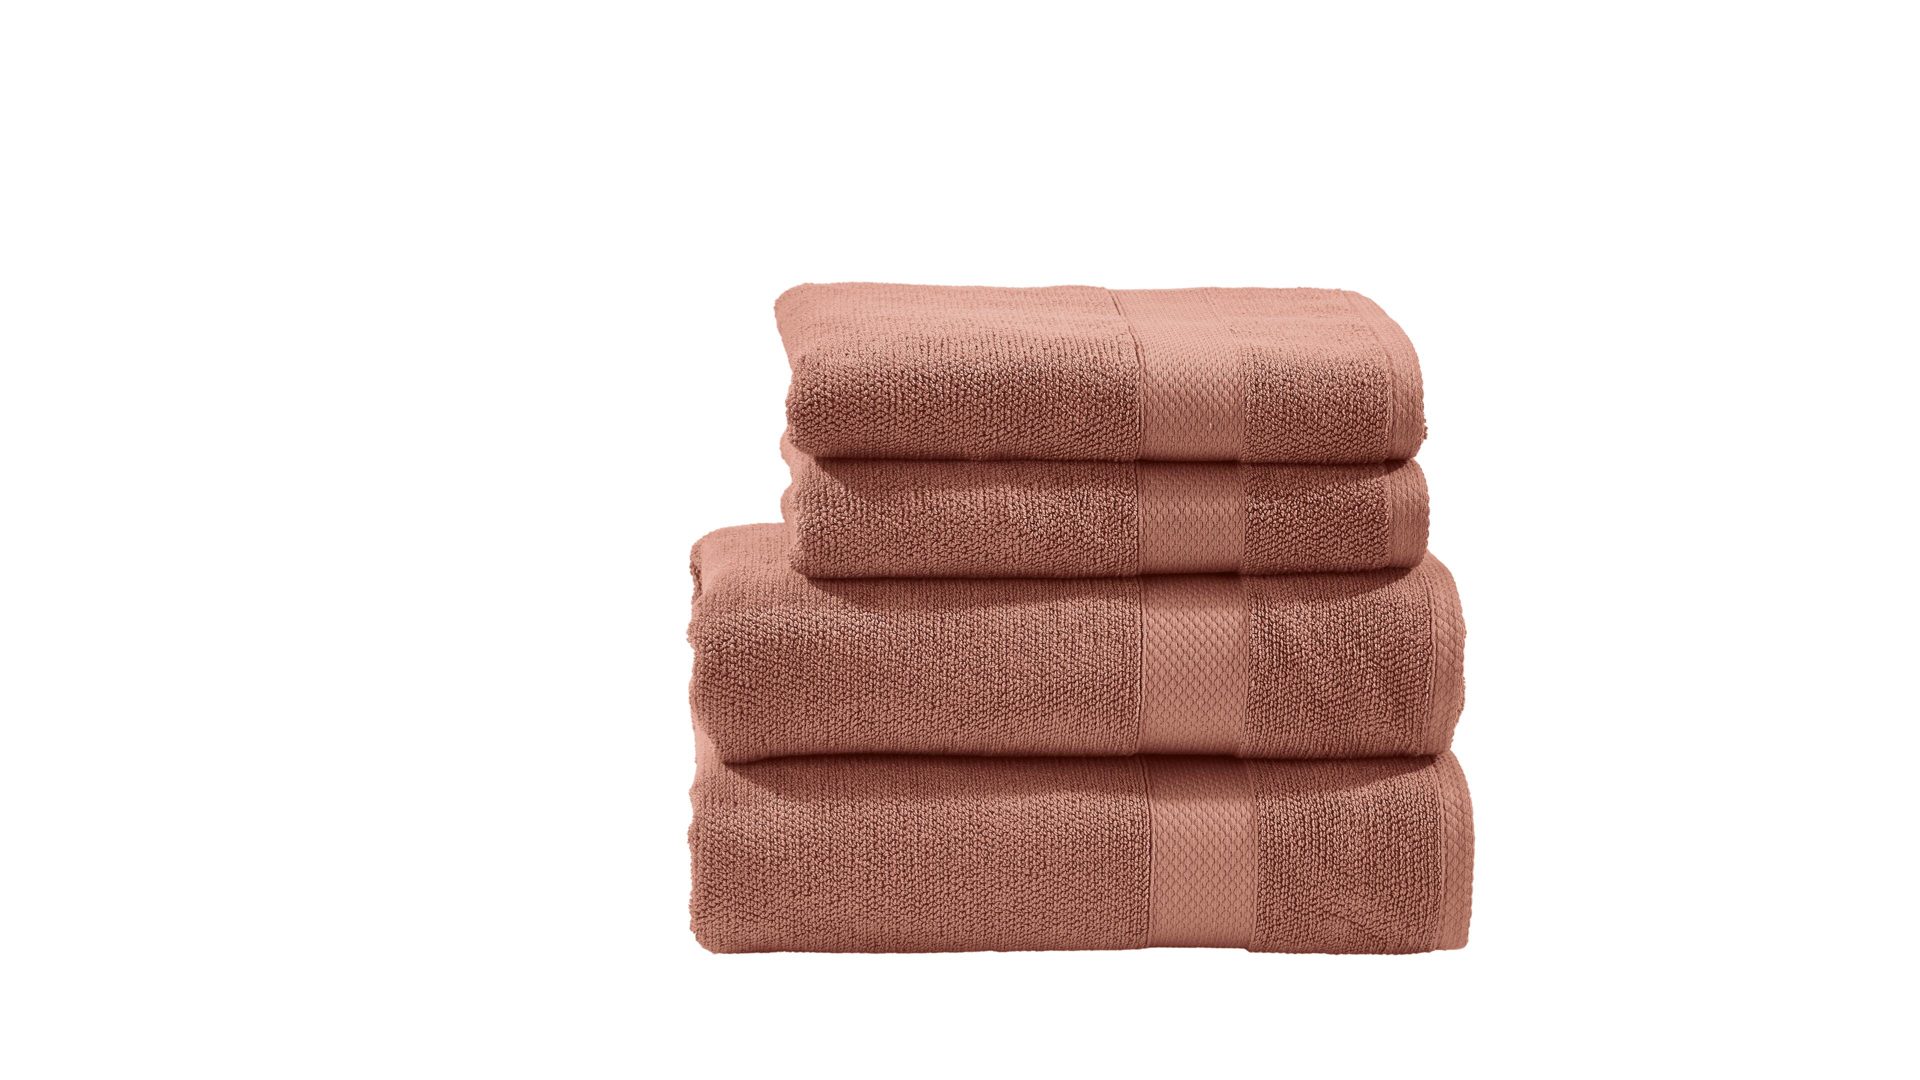 Handtuch-Set Done.® aus Stoff in Rot done.® Handtuch-Set Deluxe für Ihre Heimtextilien wüstensandfarbene Baumwolle – vierteilig